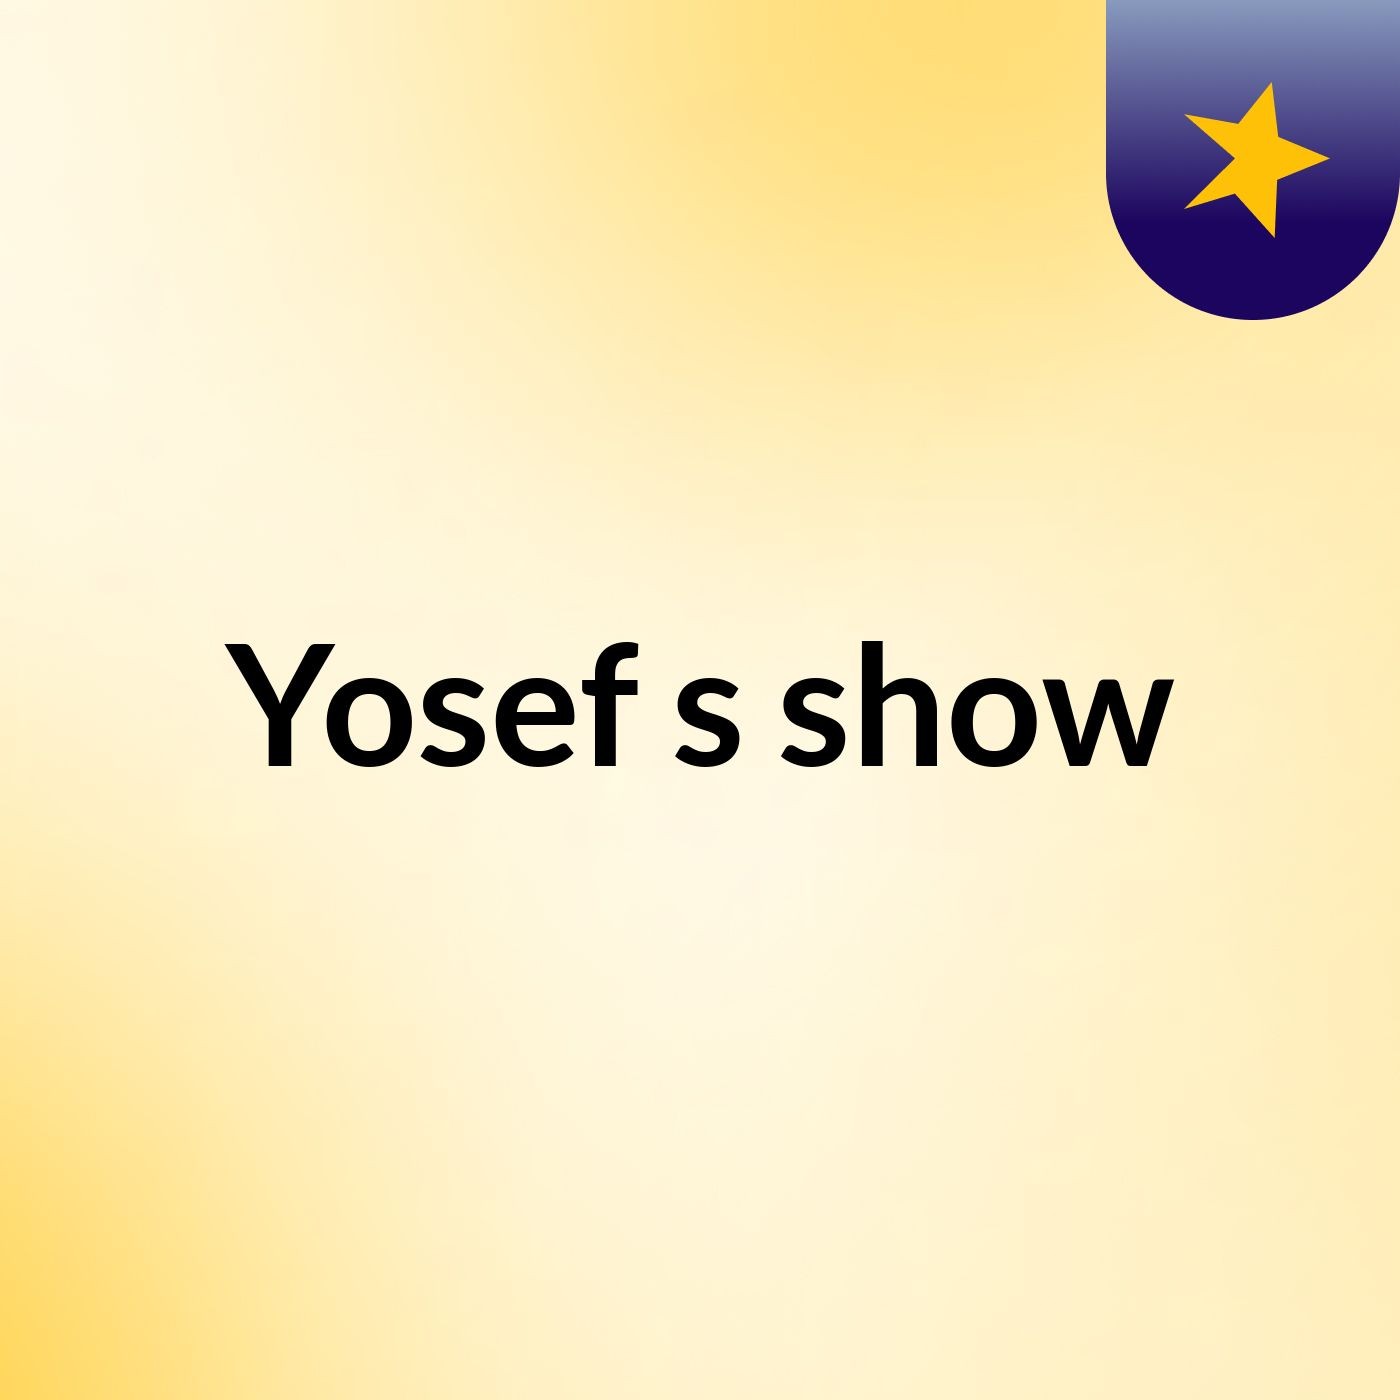 Yosef's show